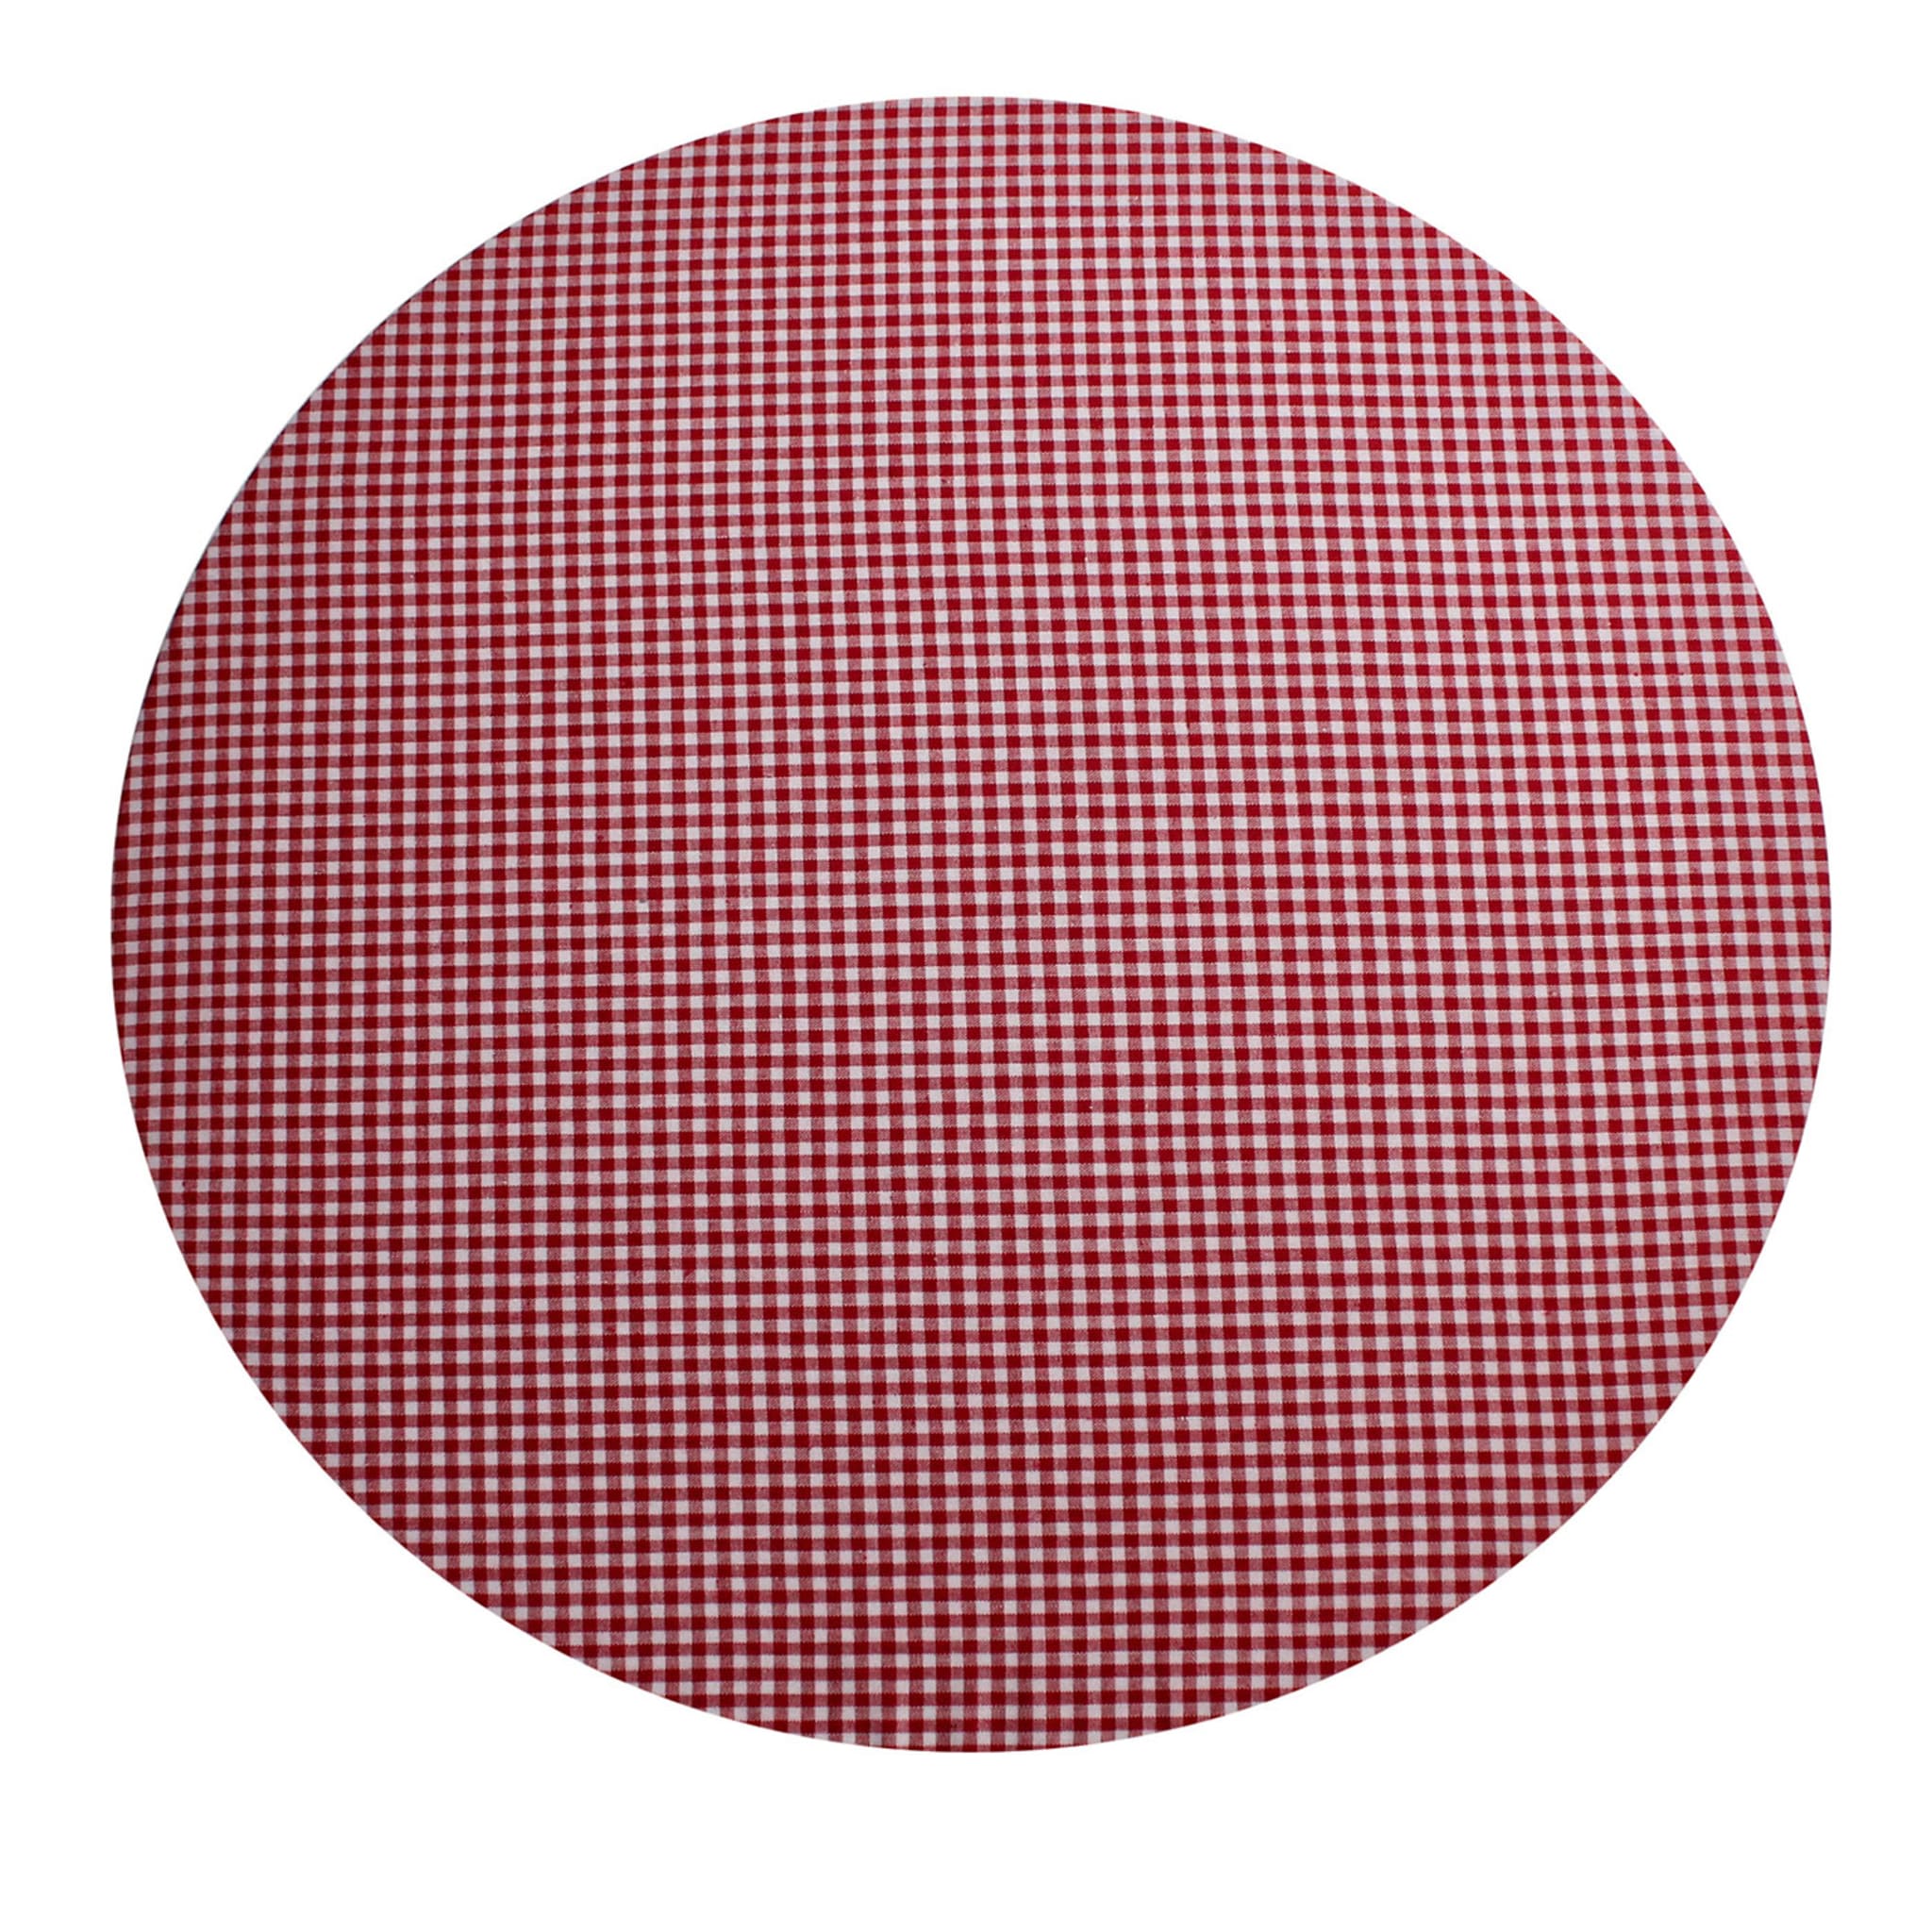 Cuffiette Check Round Rot-Weiß Platzset #1 - Hauptansicht